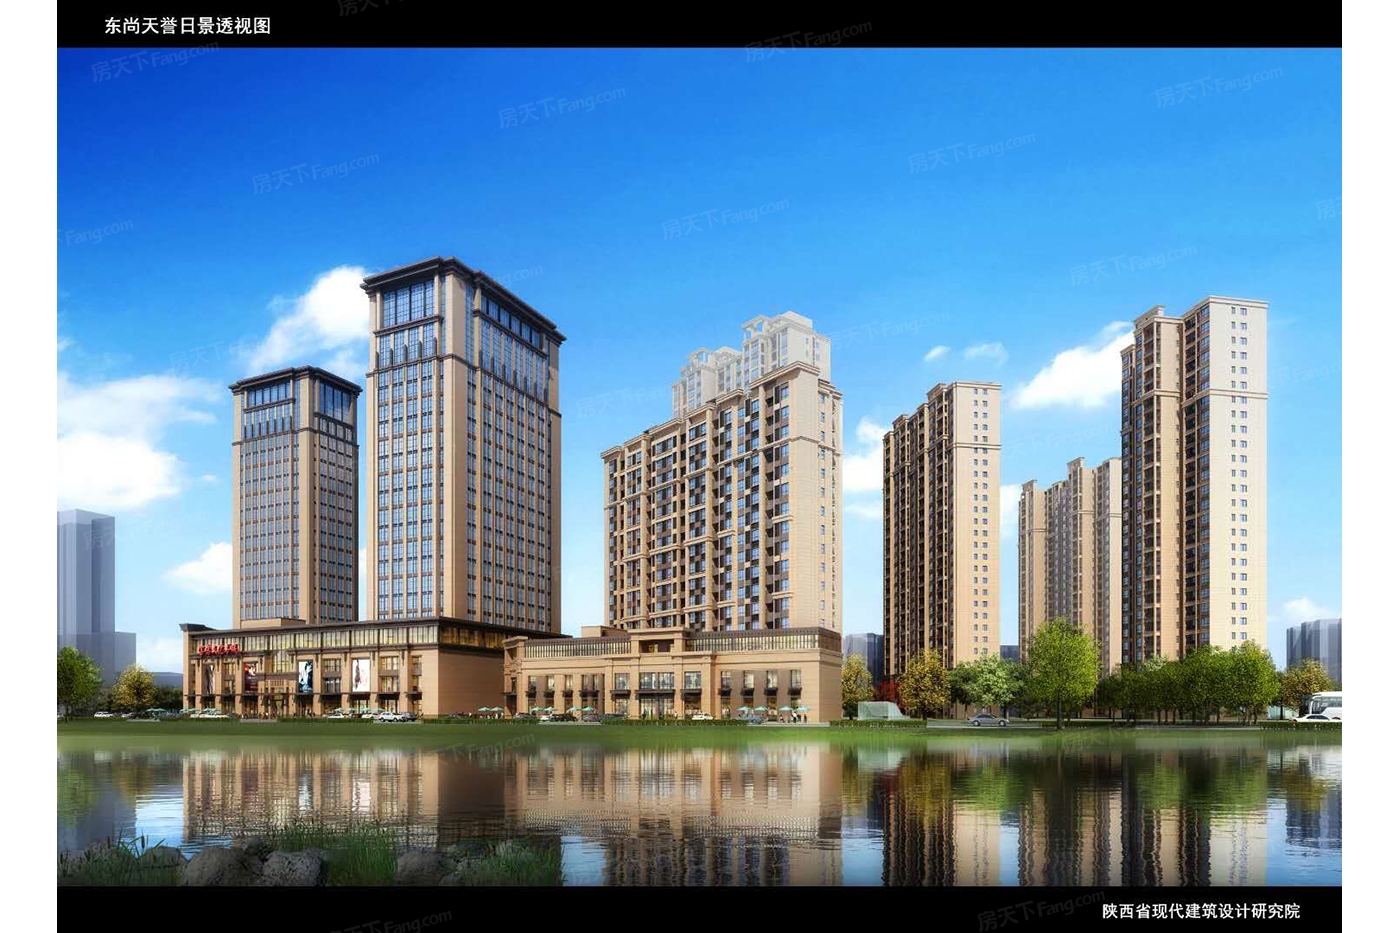 2023年11月宝鸡渭滨区4000-6000元/㎡的楼盘就剩这些了，手慢无！